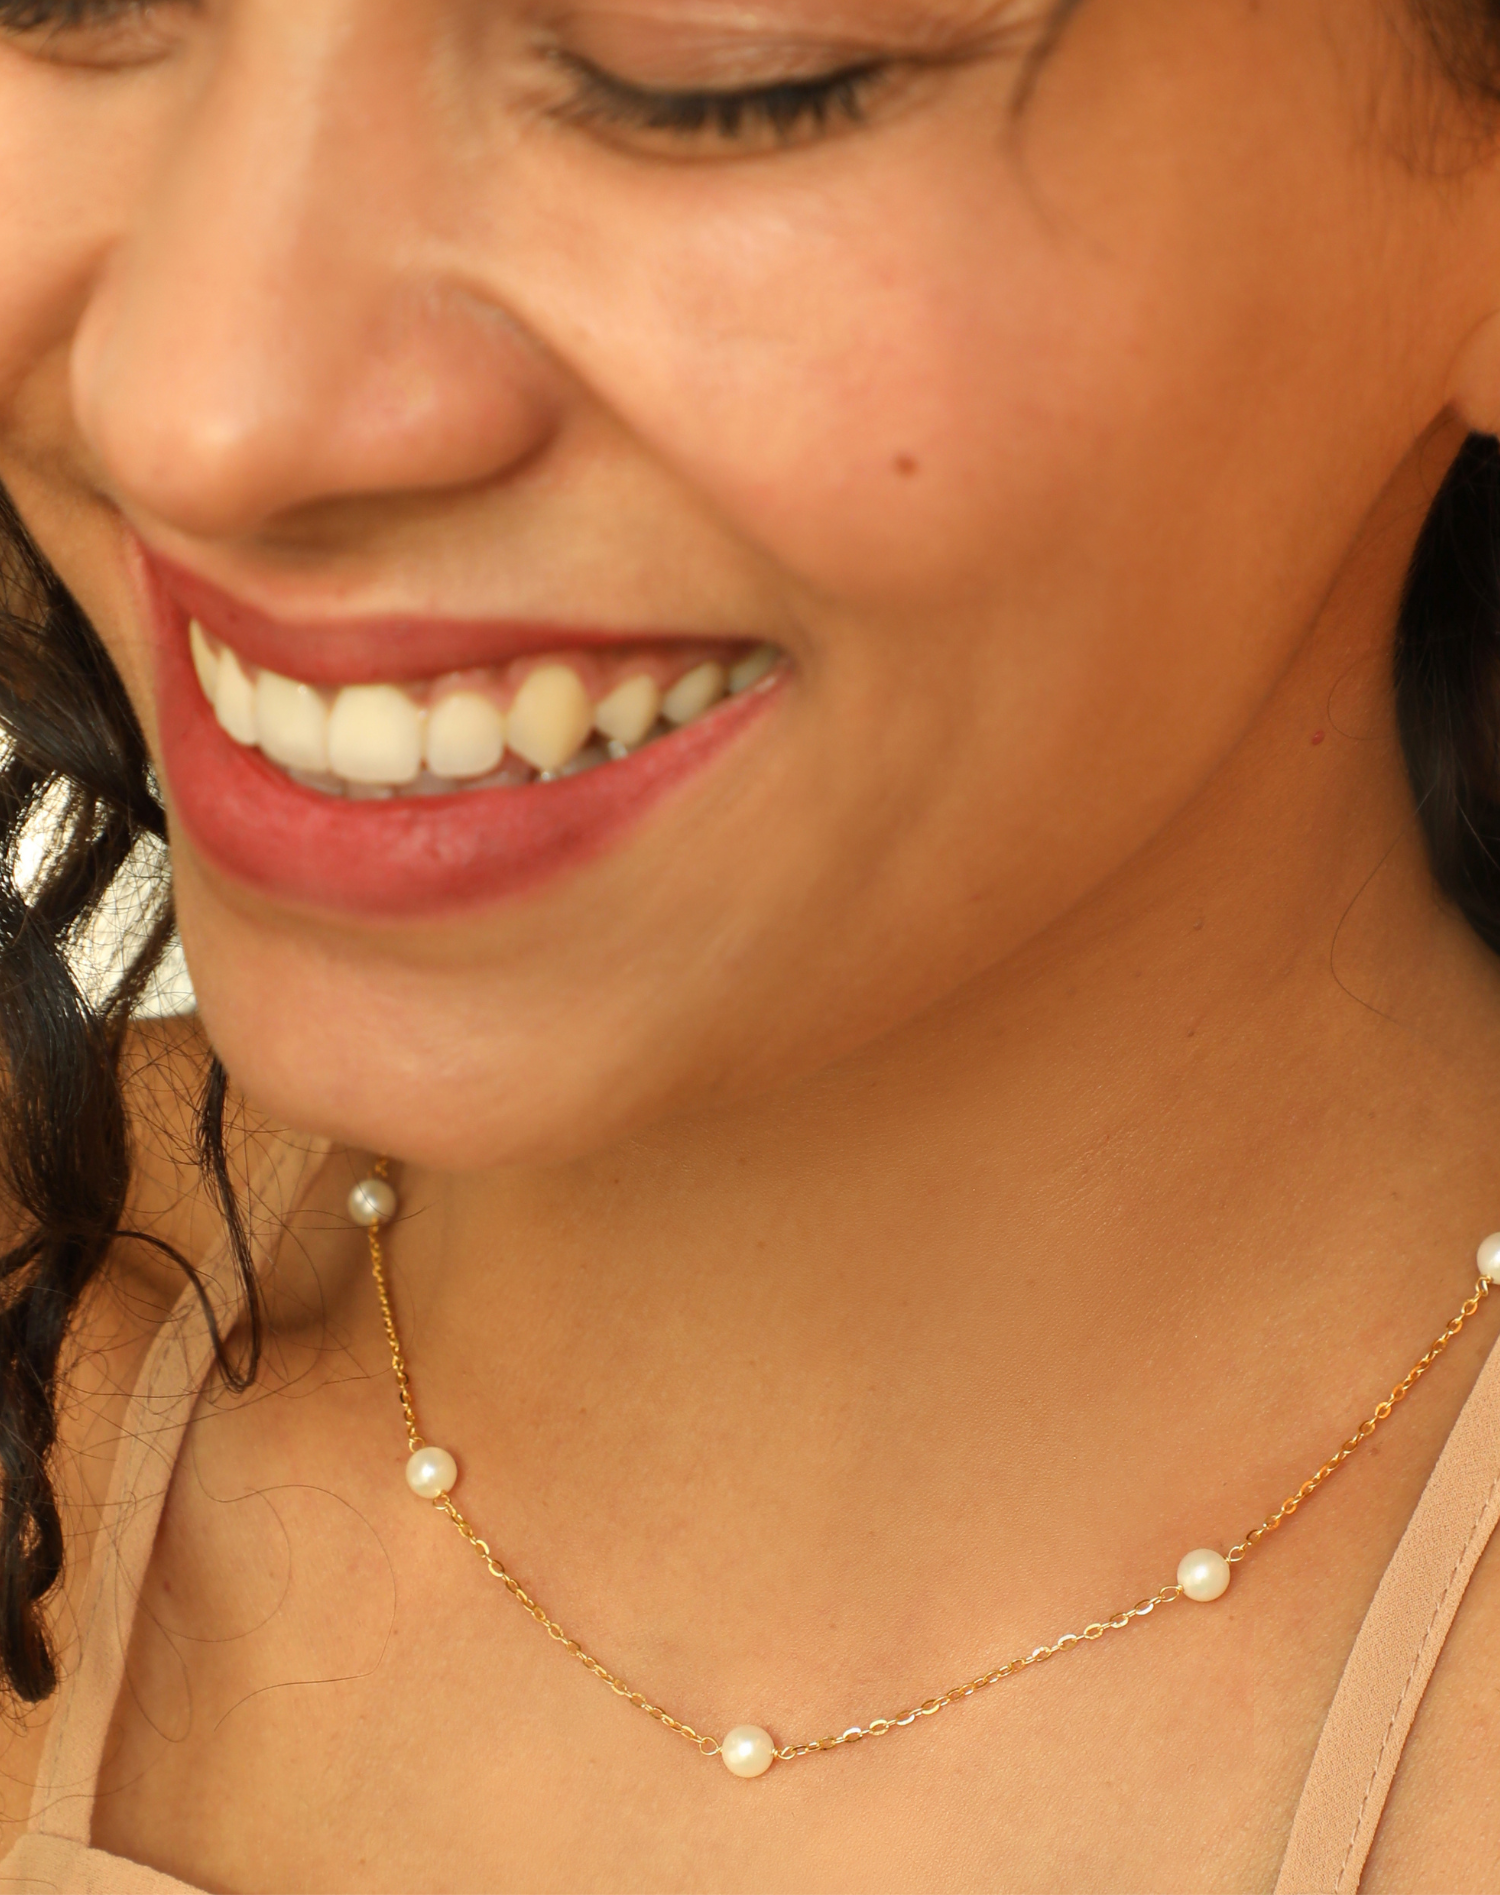 Buy Silver Necklaces & Pendants for Women by Lecalla Online | Ajio.com